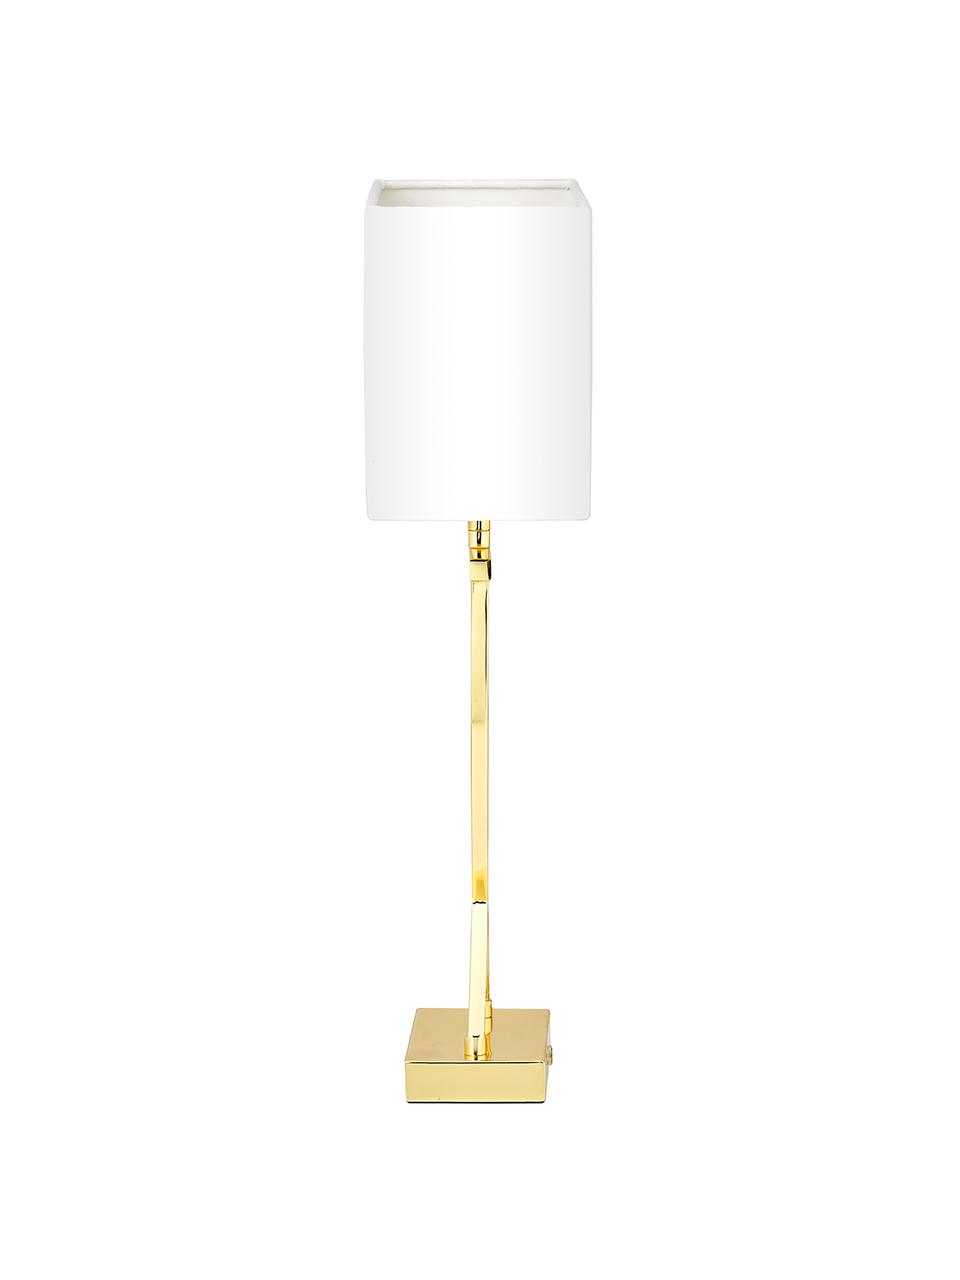 Grande lampe à poser classique Vanessa, Blanc, couleur dorée, larg. 27 x haut. 52 cm